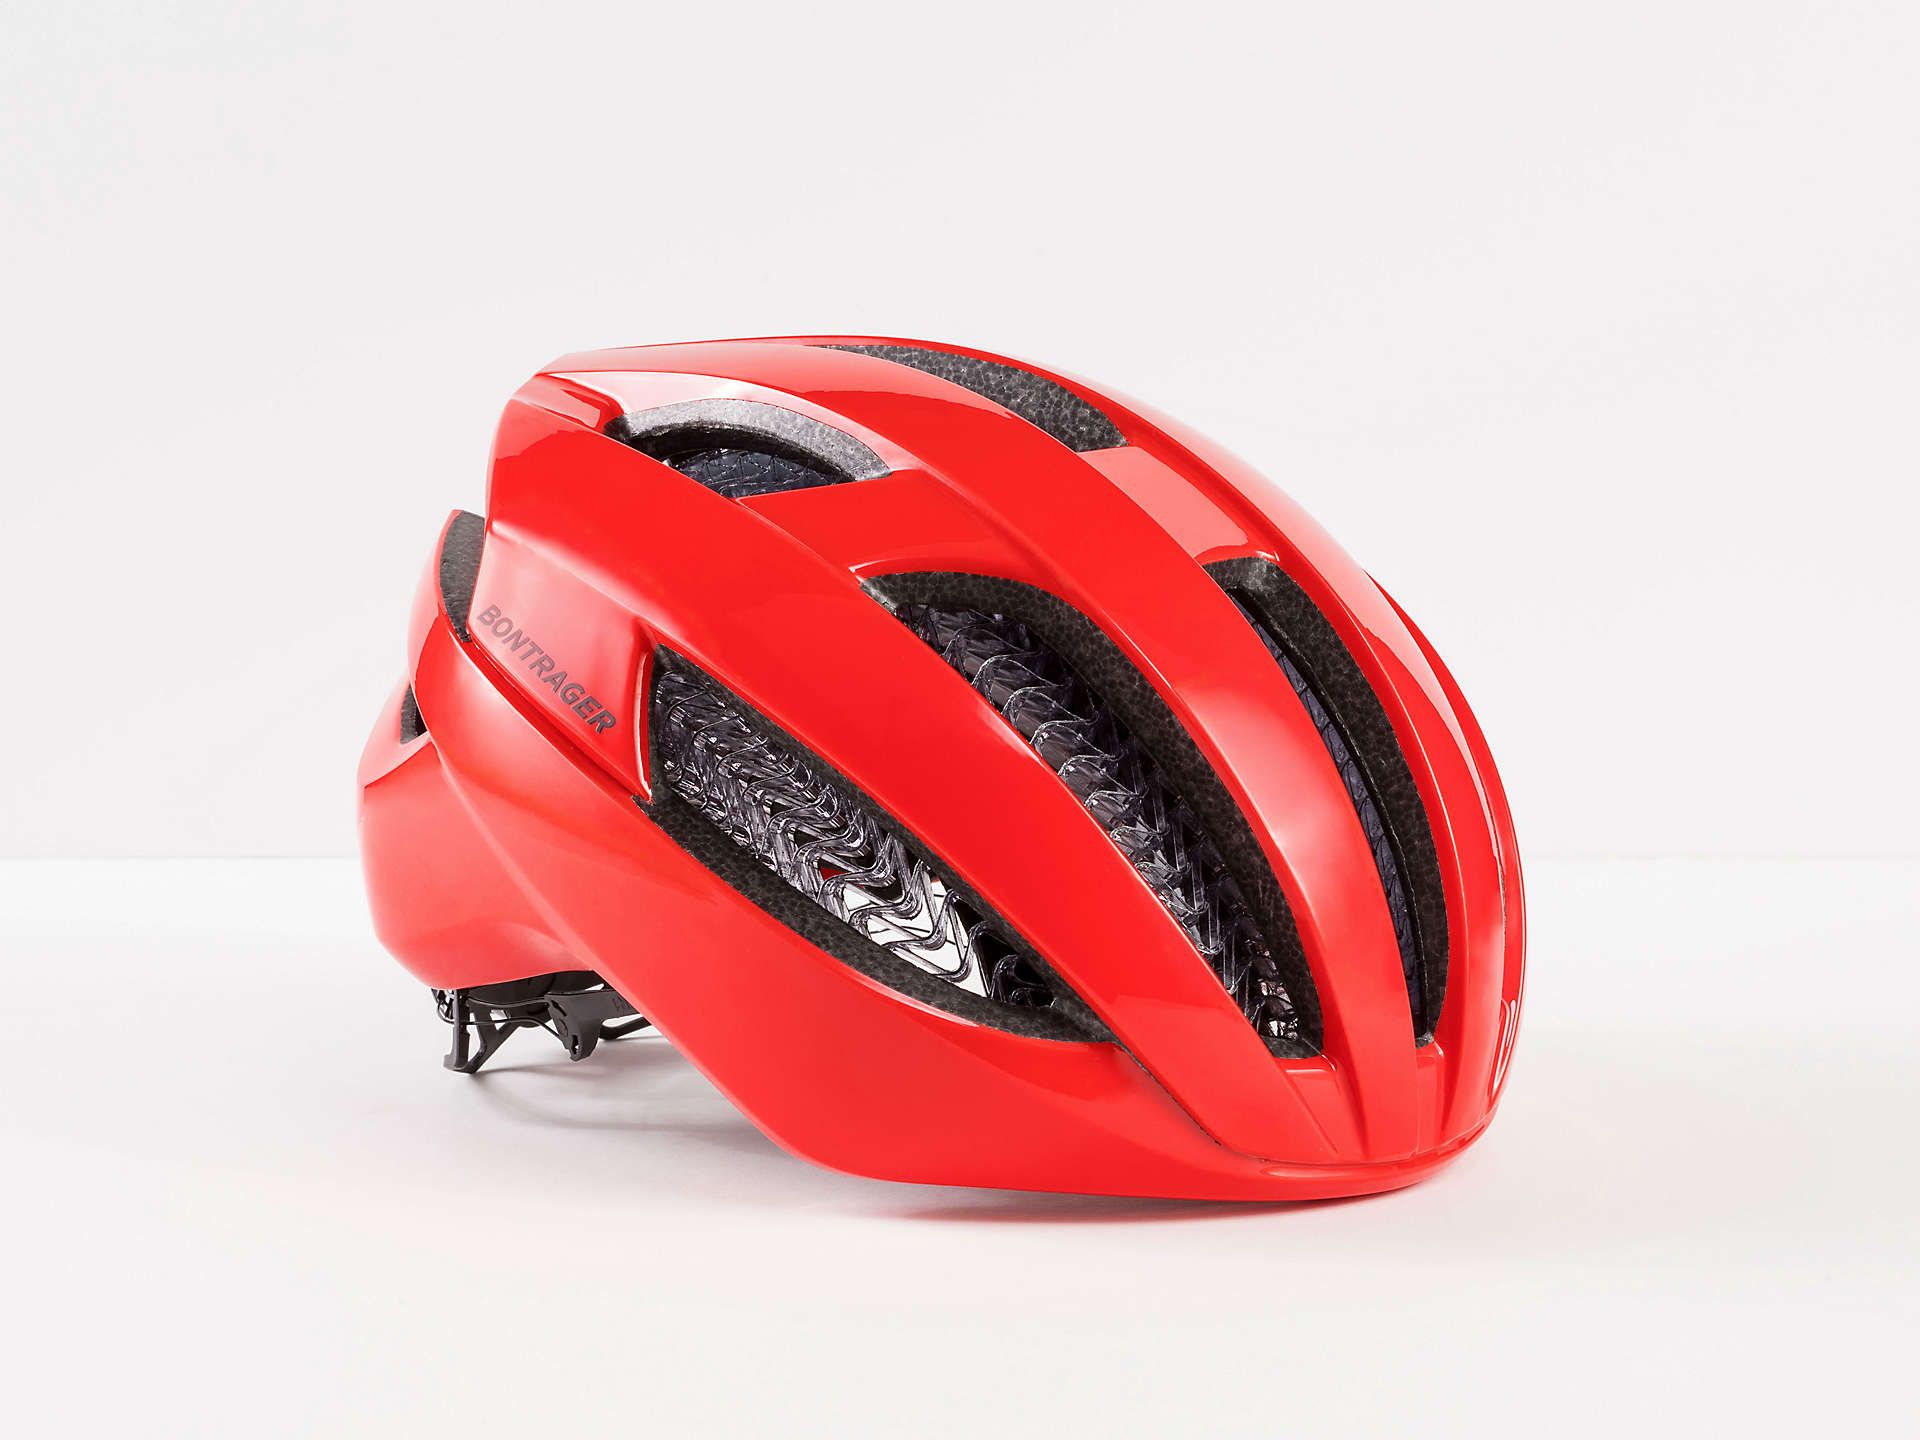 Specter WaveCel Road Bike Helmet